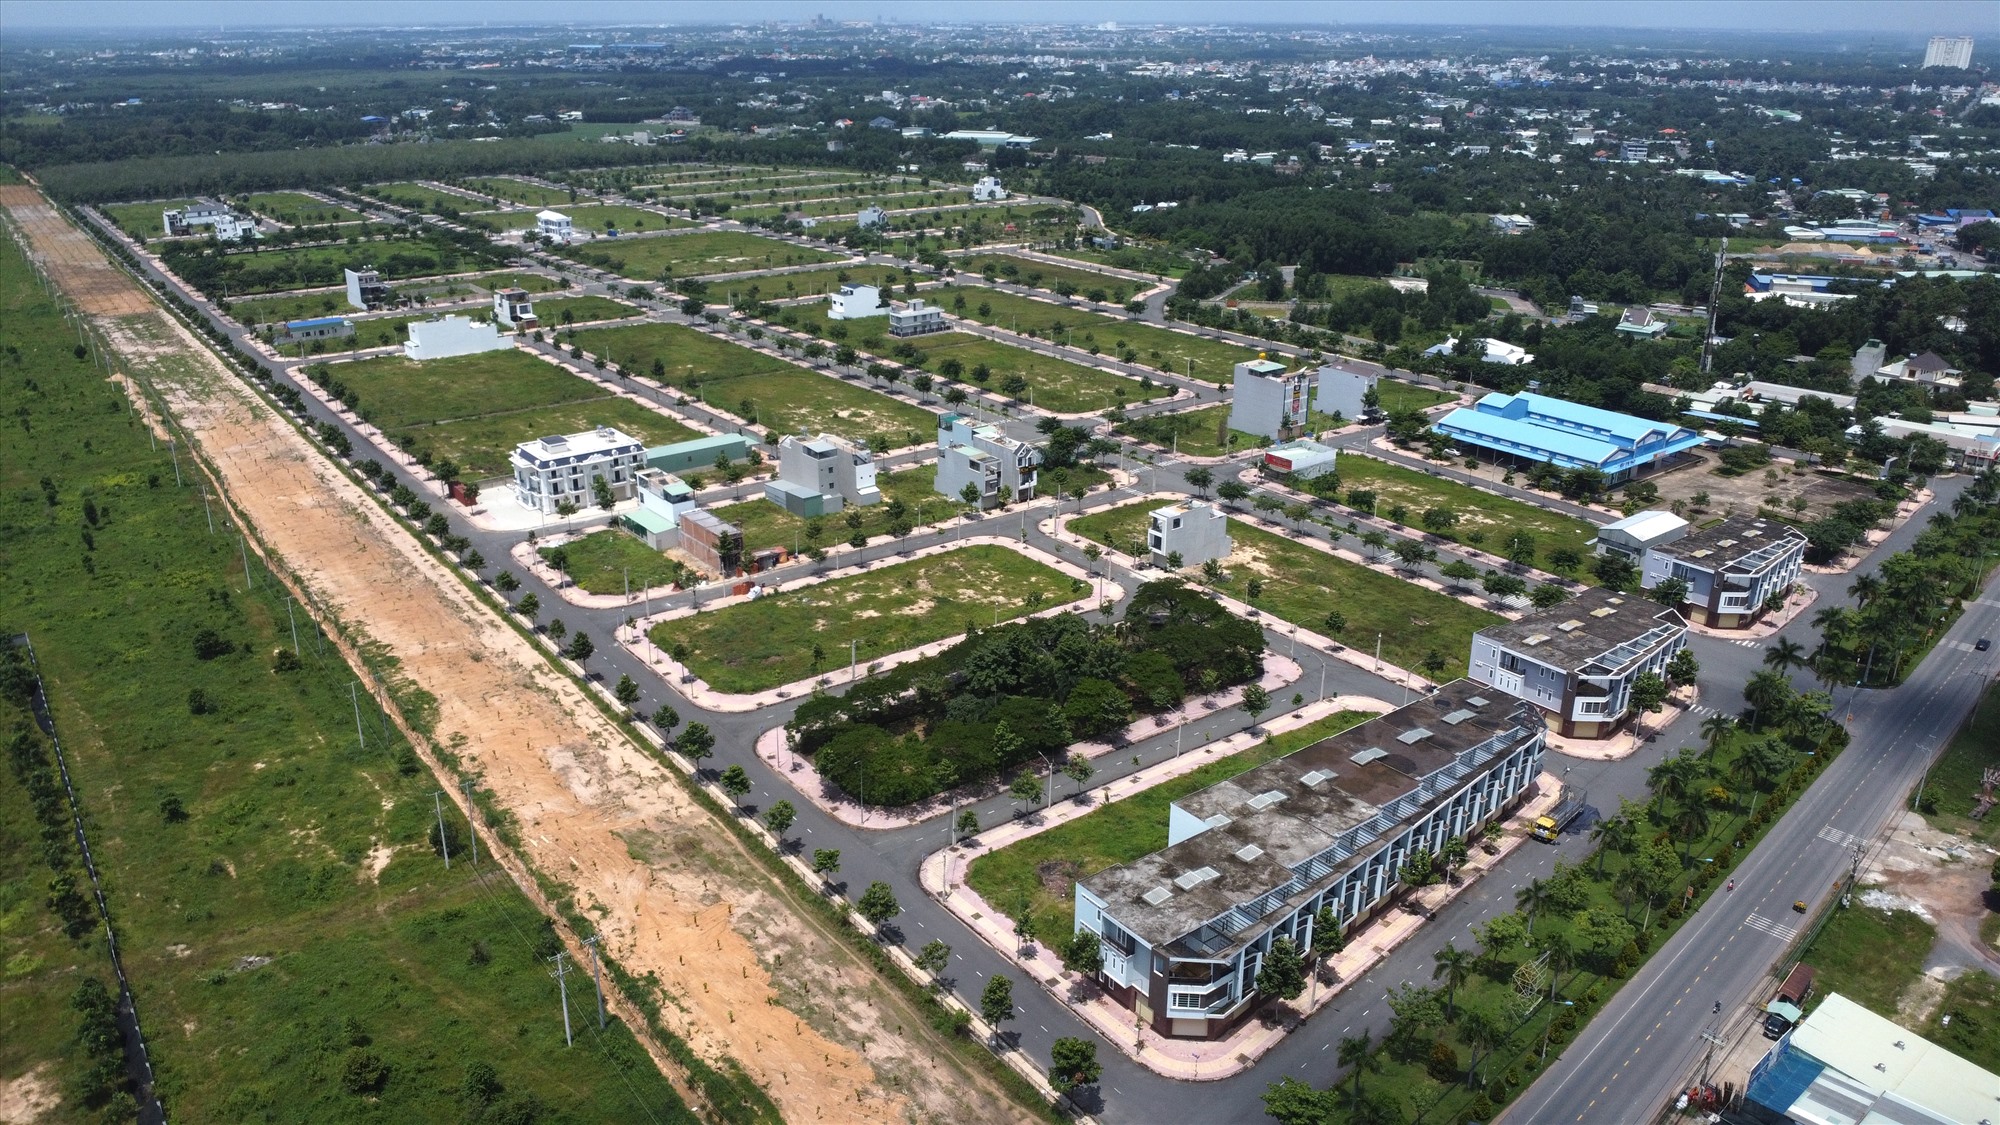 Dự án khu dân cư D2D Lộc An ở huyện Long Thành cũng nằm ở vị trí đắc địa trên đường tỉnh lộ 769, chỉ cách sân bay Long Thành đang thi công vài cây số, nhưng đến nay người dân tới xây dựng nhà cửa vẫn còn thưa thớt.